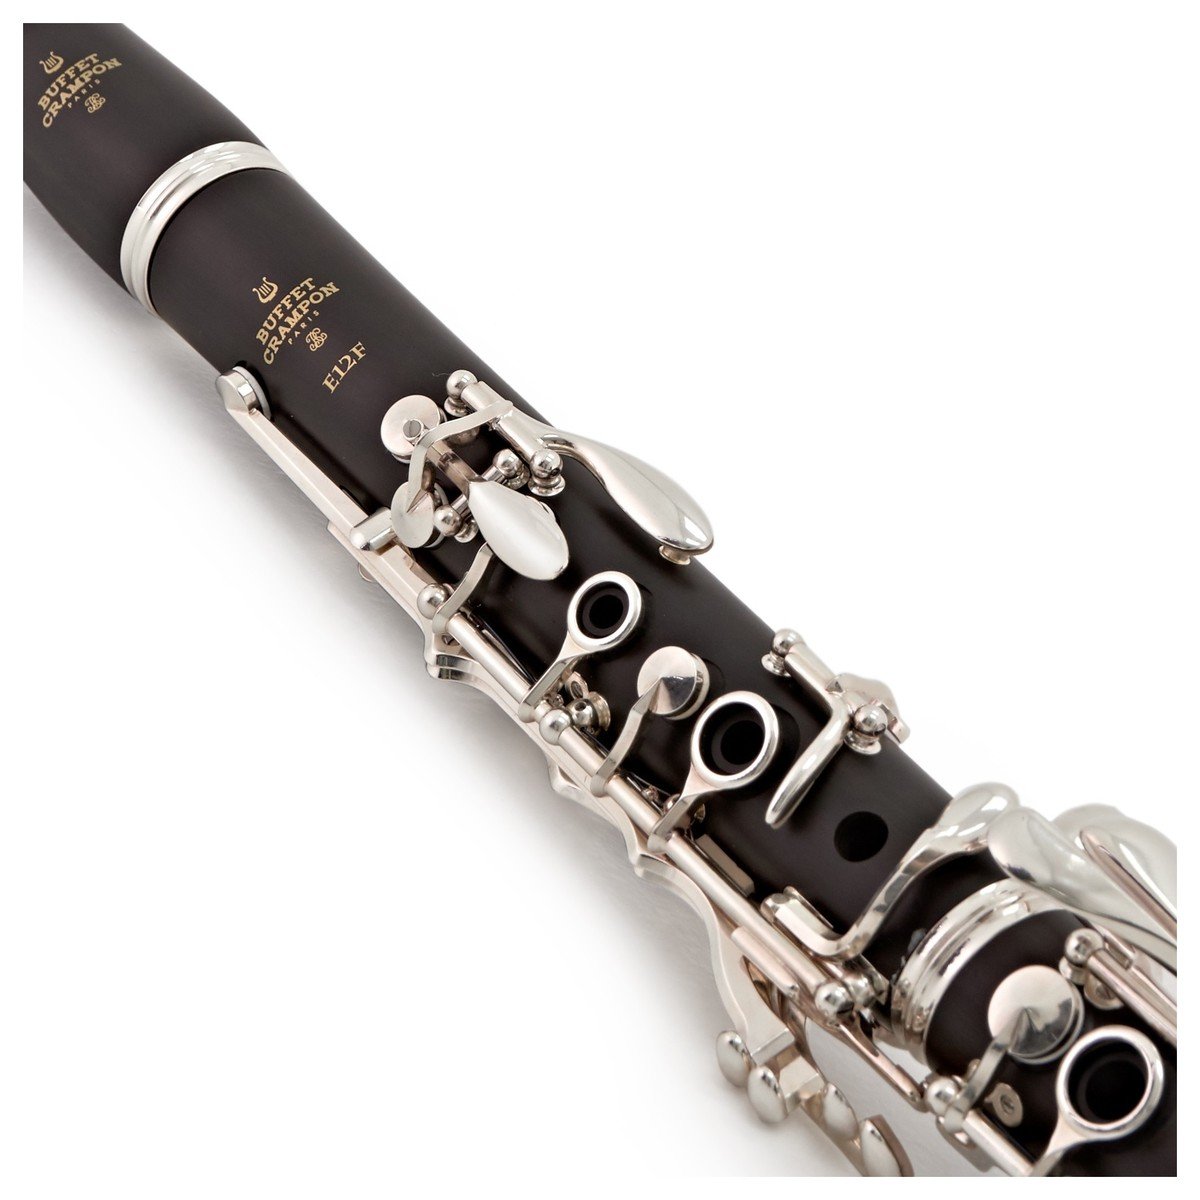 Comment bien choisir sa clarinette ? - Musicali - Location vente d